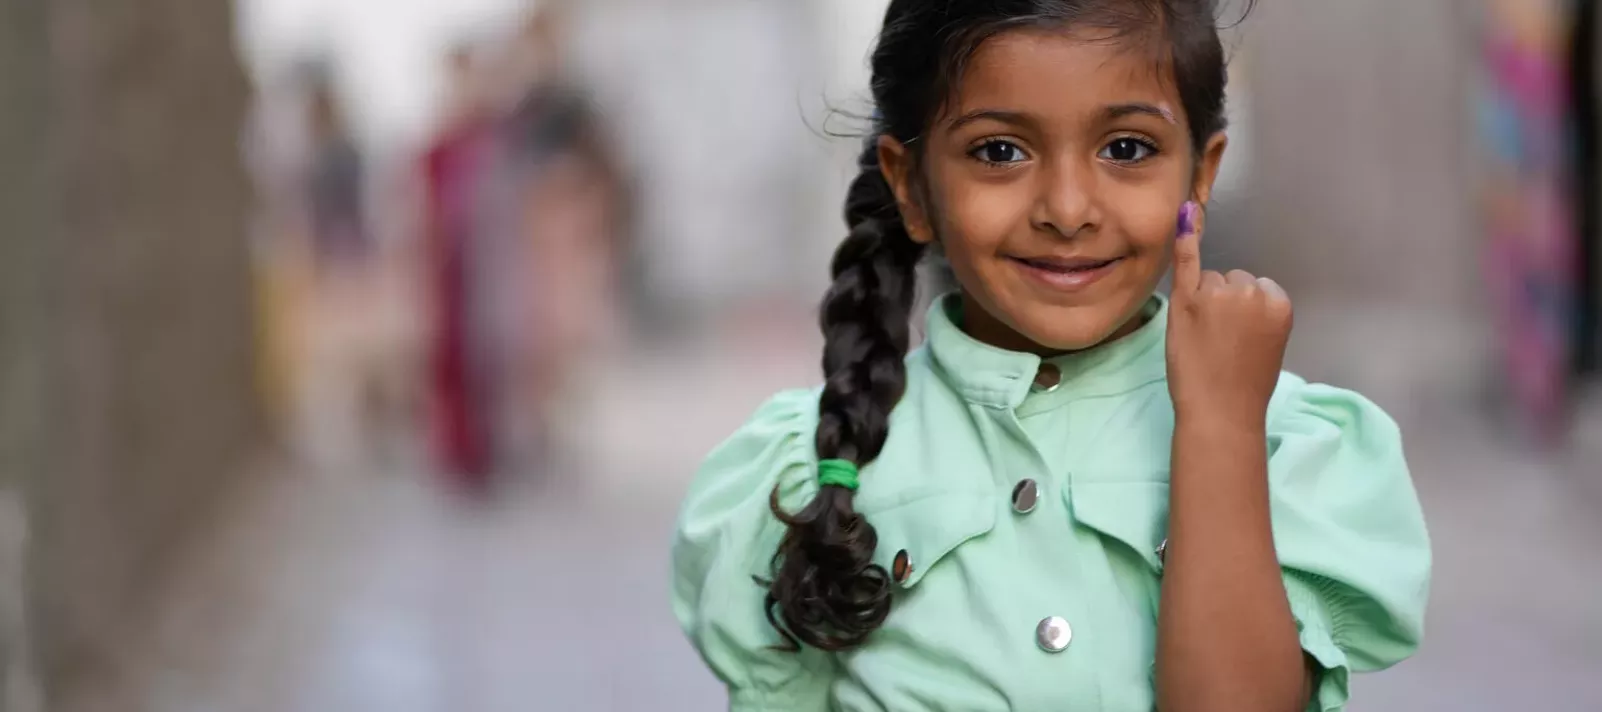 فتاة صغيرة فخورة تعرض إصبعها الملوّن بعد تلقيها اللقاح المضاد لشلل الأطفال في اليمن.